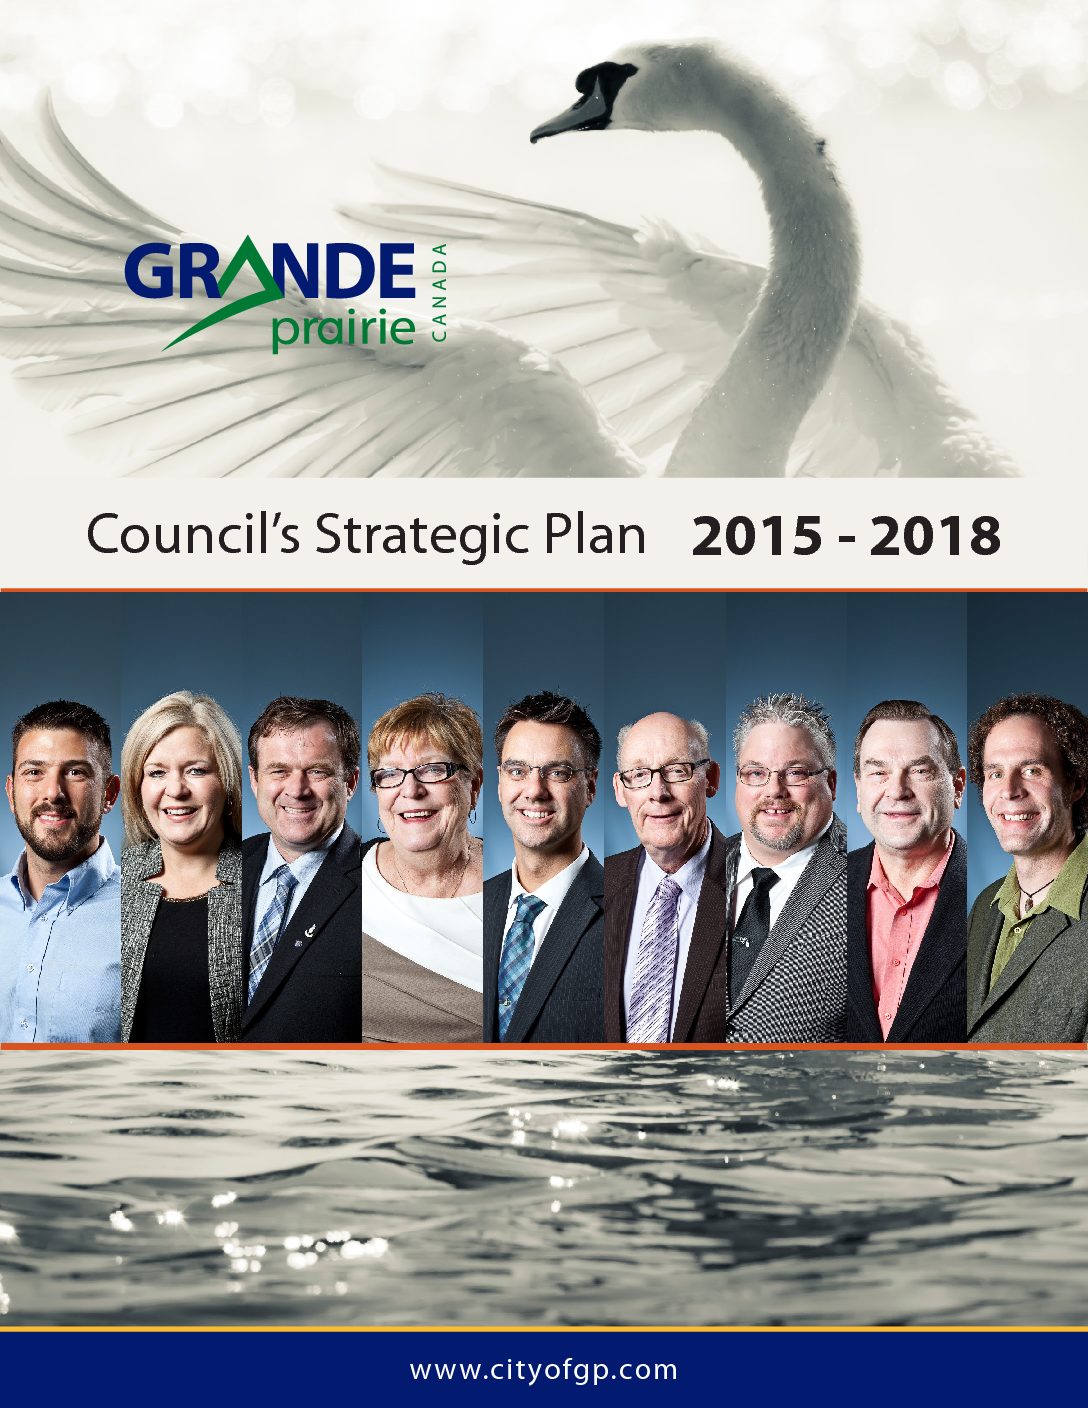 Grande Prairie – Council’s 2015-2018 Strategic Plan